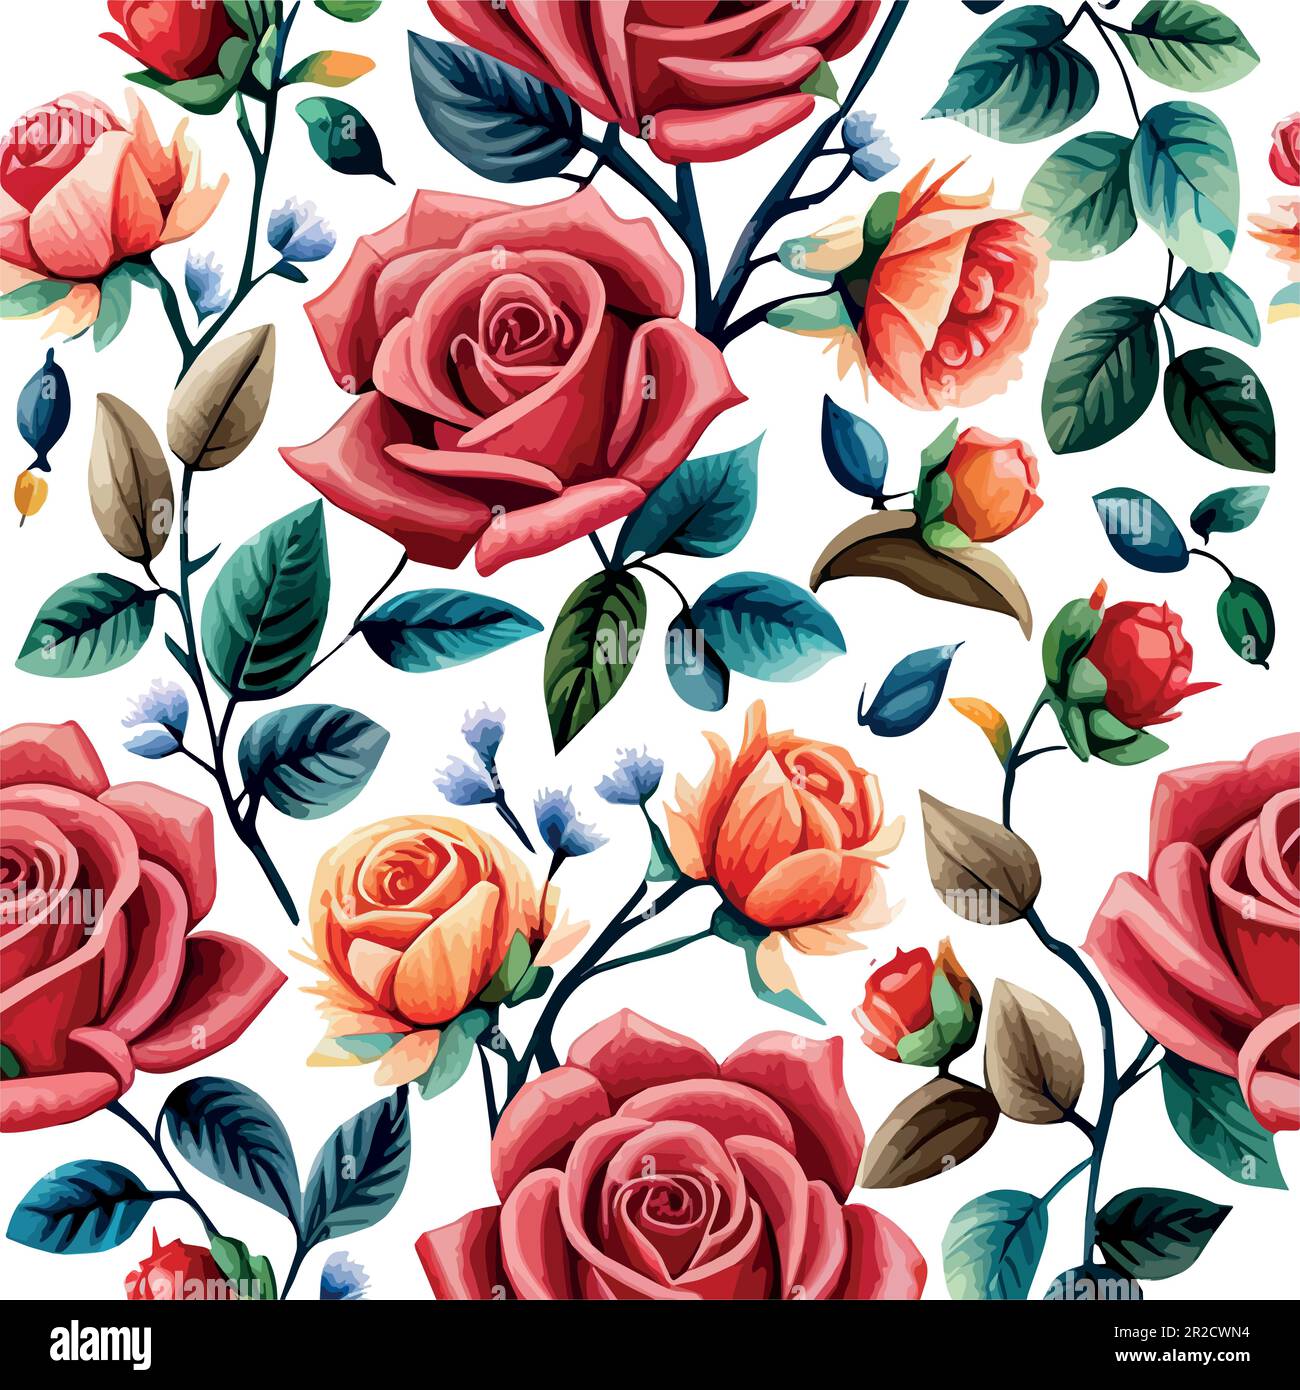 Vektordarstellung Nahtloses Muster mit großen Rosen Blumenverzierungen auf  weißem Hintergrund. Patern zum Bedrucken von Kleidung, Stoff,  Geschenkpapier, Blumenhintergrund, Tapete. Vektordarstellung  Stock-Vektorgrafik - Alamy